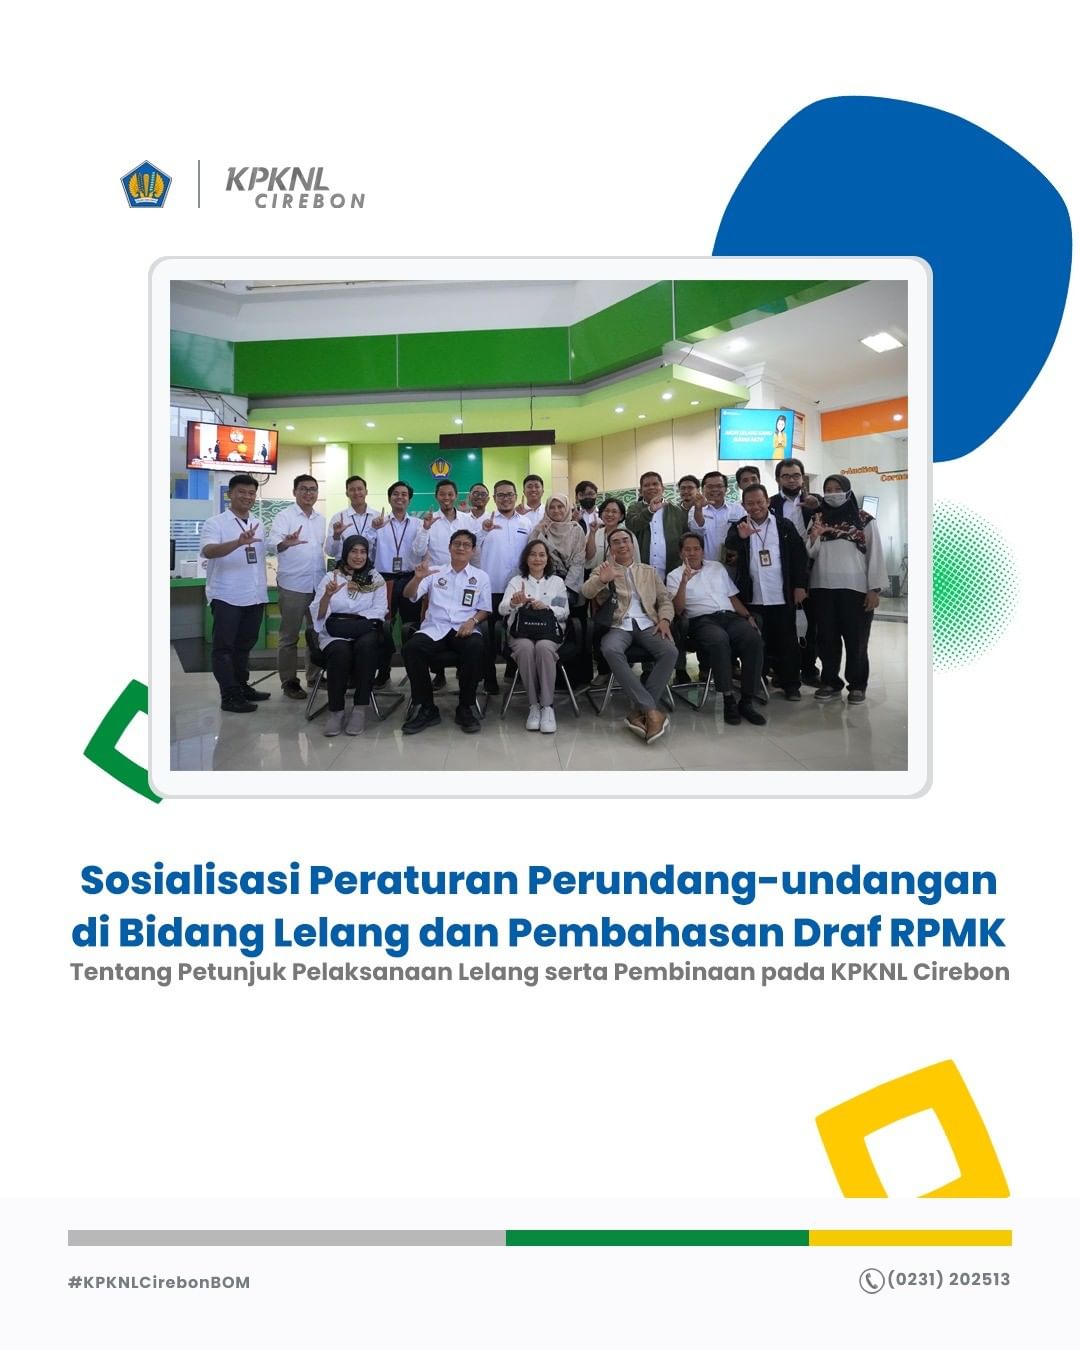 Sosialisasi Peraturan Perundang-undangan di Bidang Lelang dan Pembahasan Draf RPMK tentang Petunjuk Pelaksanaan Lelang di KPKNL Cirebon